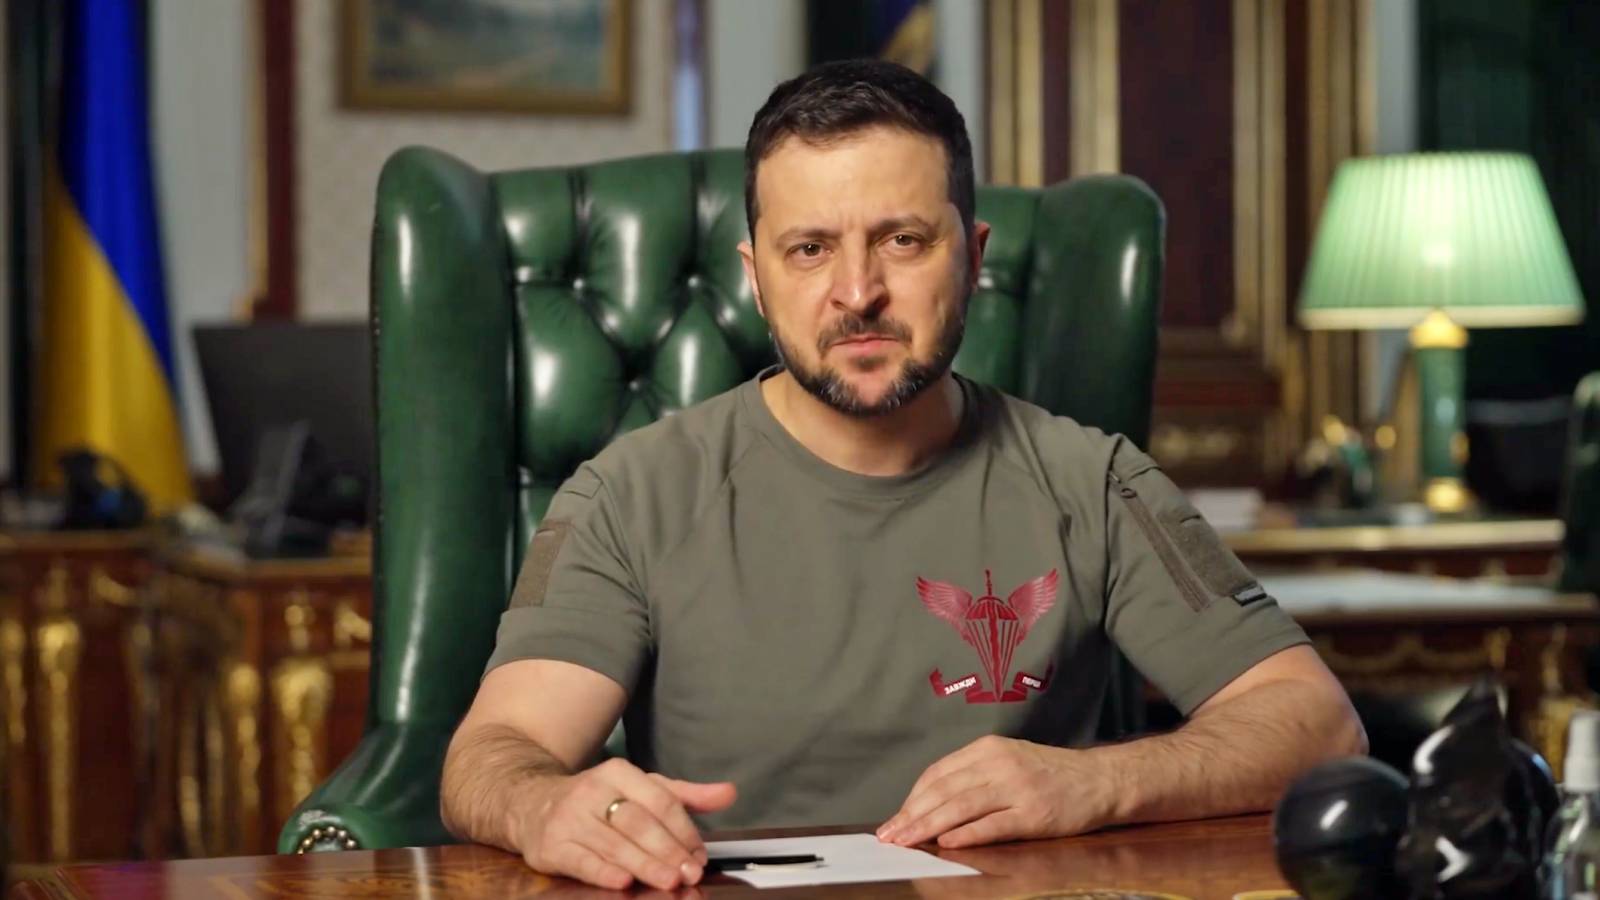 Volodymyr Zelensky parla dei principali problemi dell'Ucraina durante la guerra